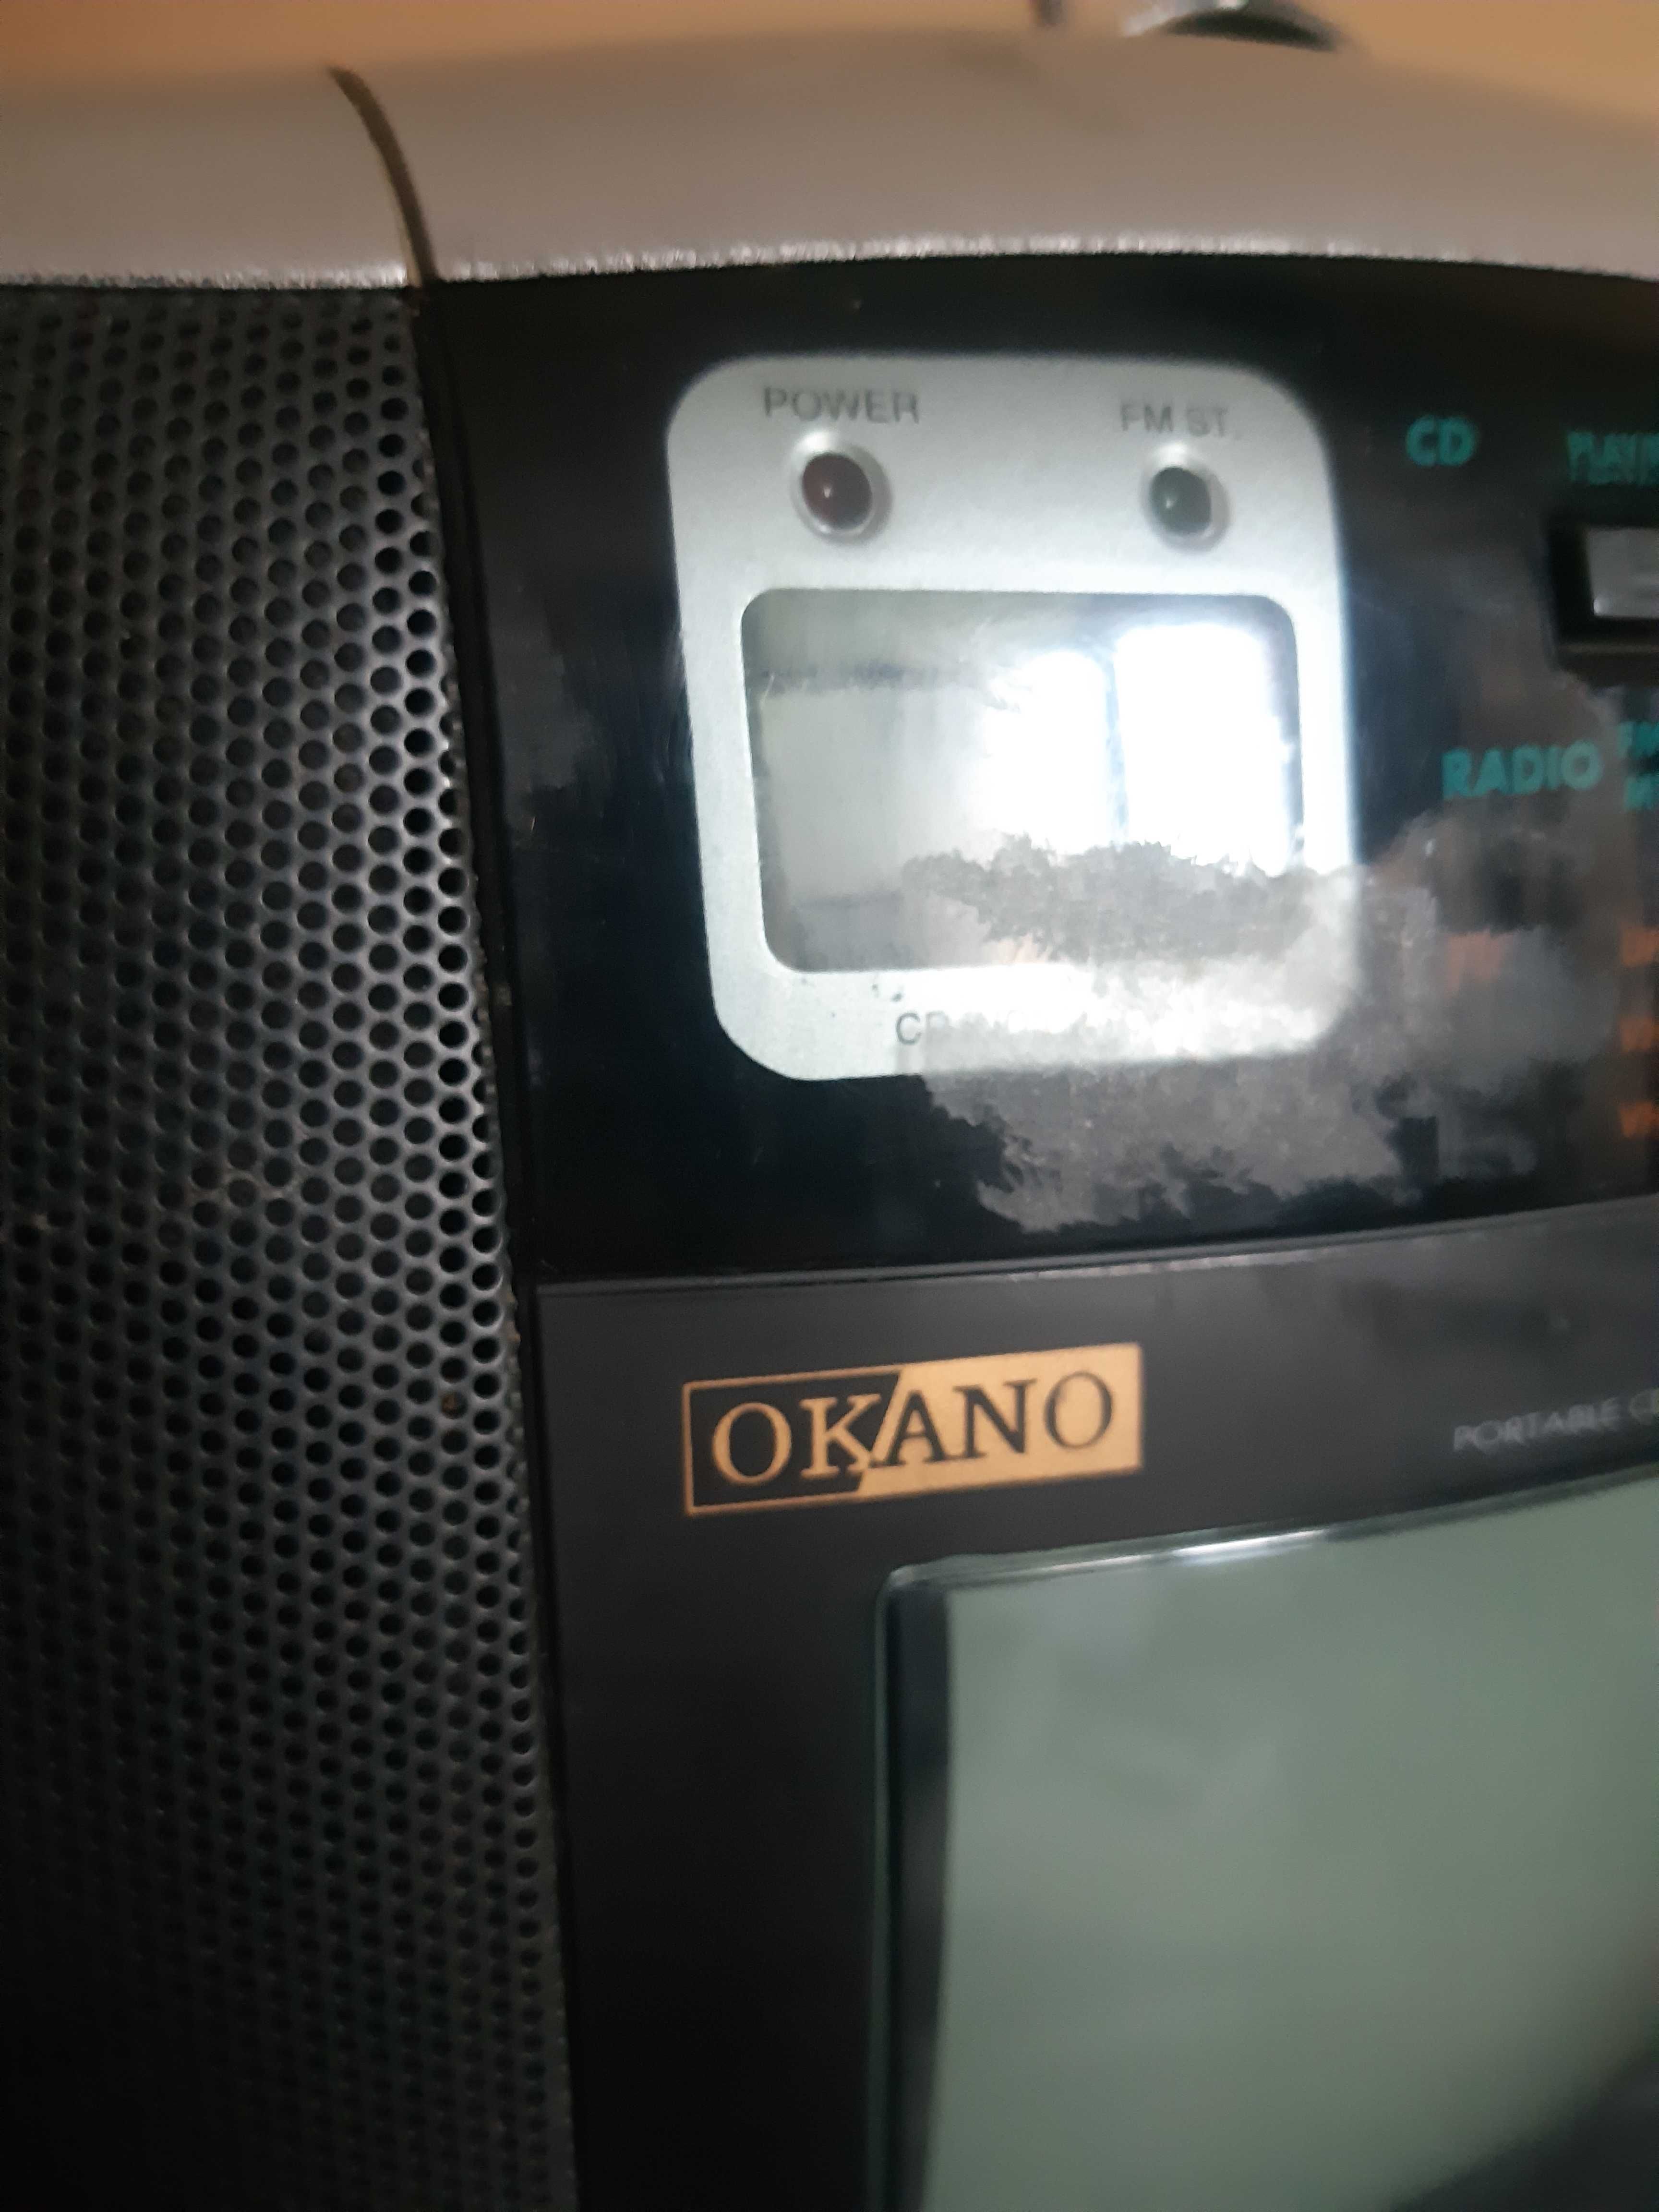 Німецький радіоприймач "OKANO".